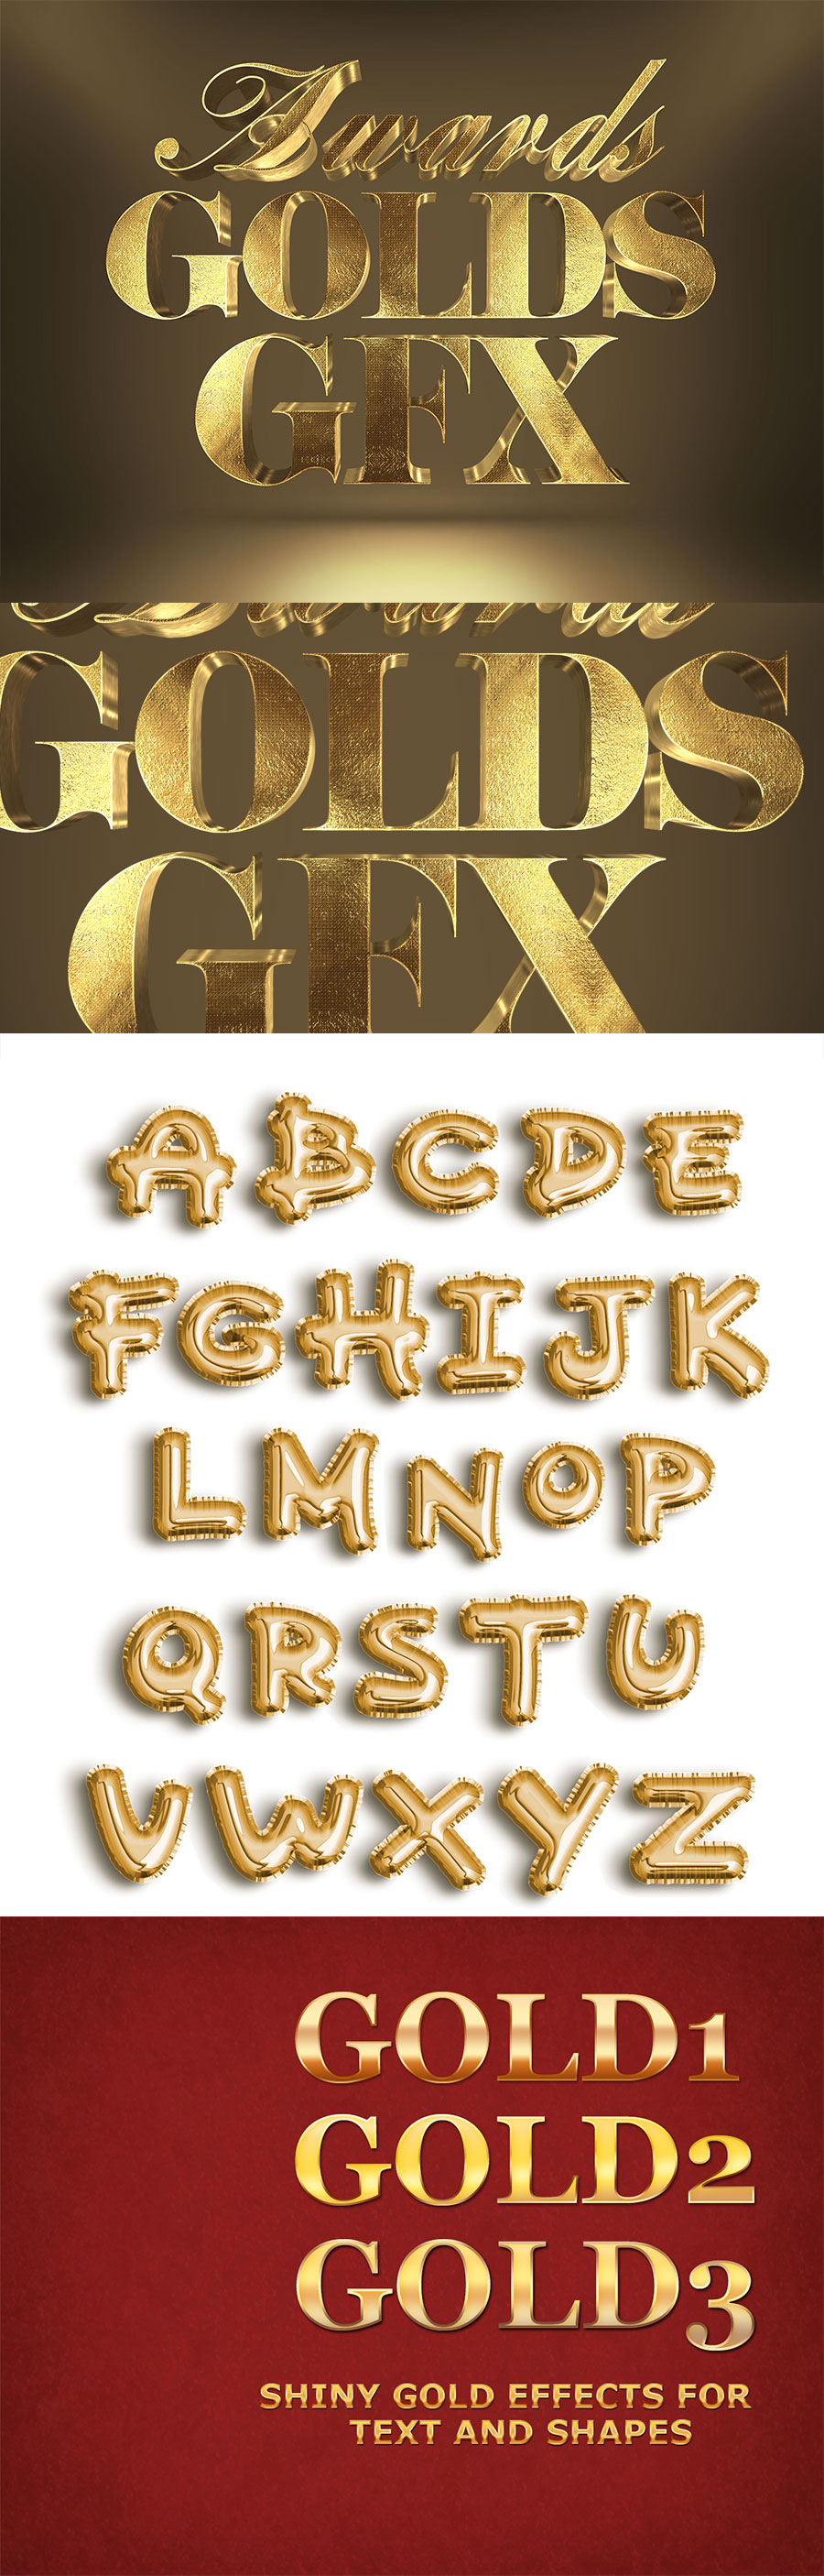 3款高端尊贵金色质感的photoshop图层样式&字母数字集合插图